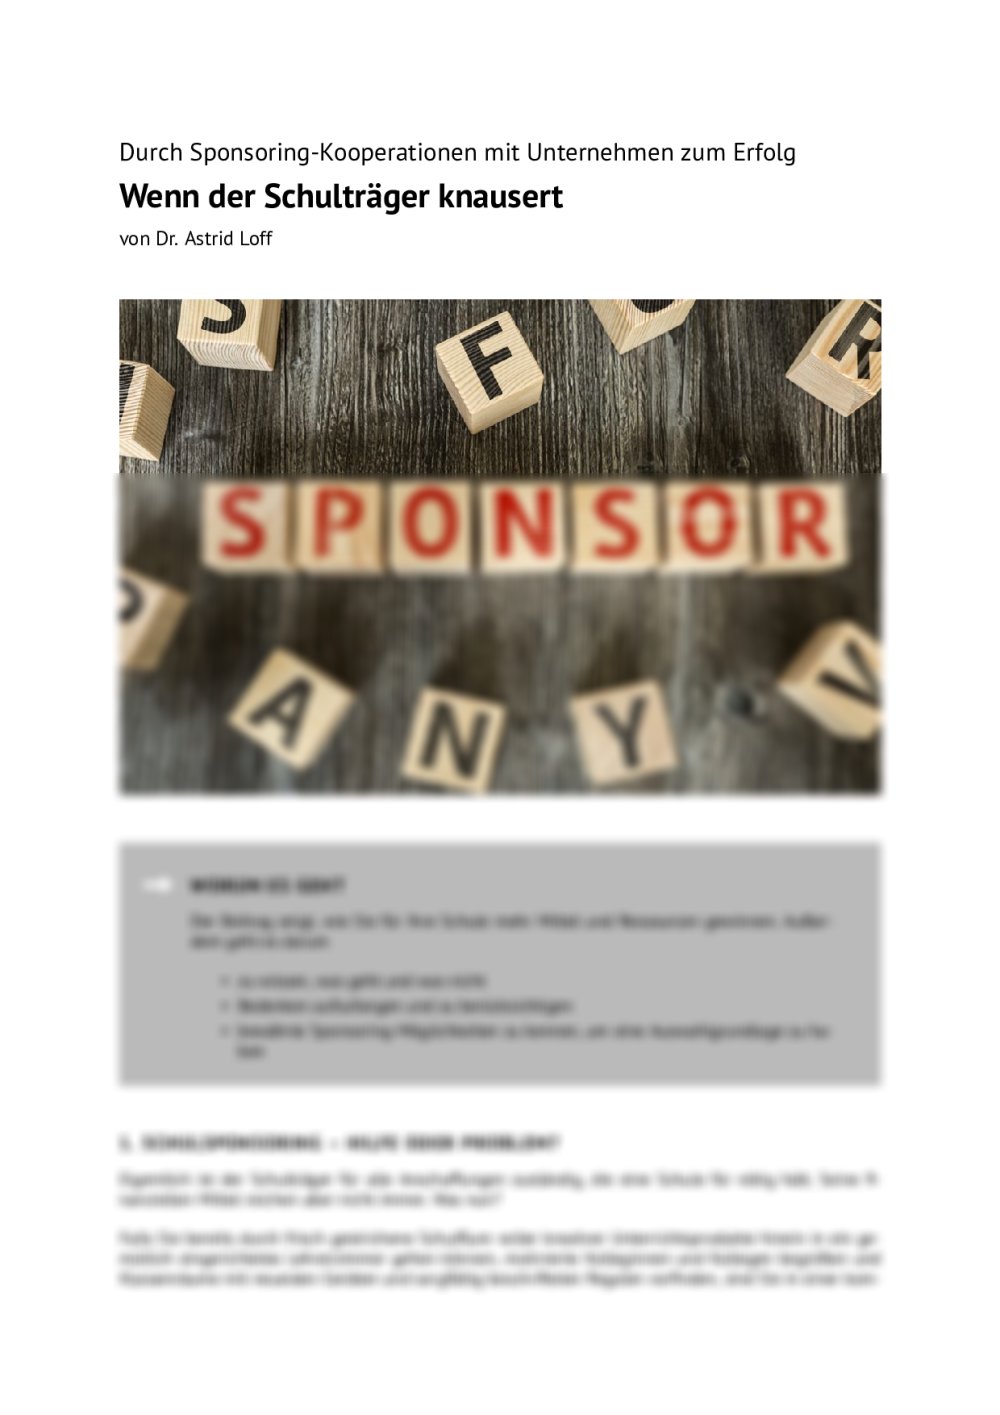 Durch Sponsoring-Kooperationen mit Unternehmen zum Erfolg - Seite 1